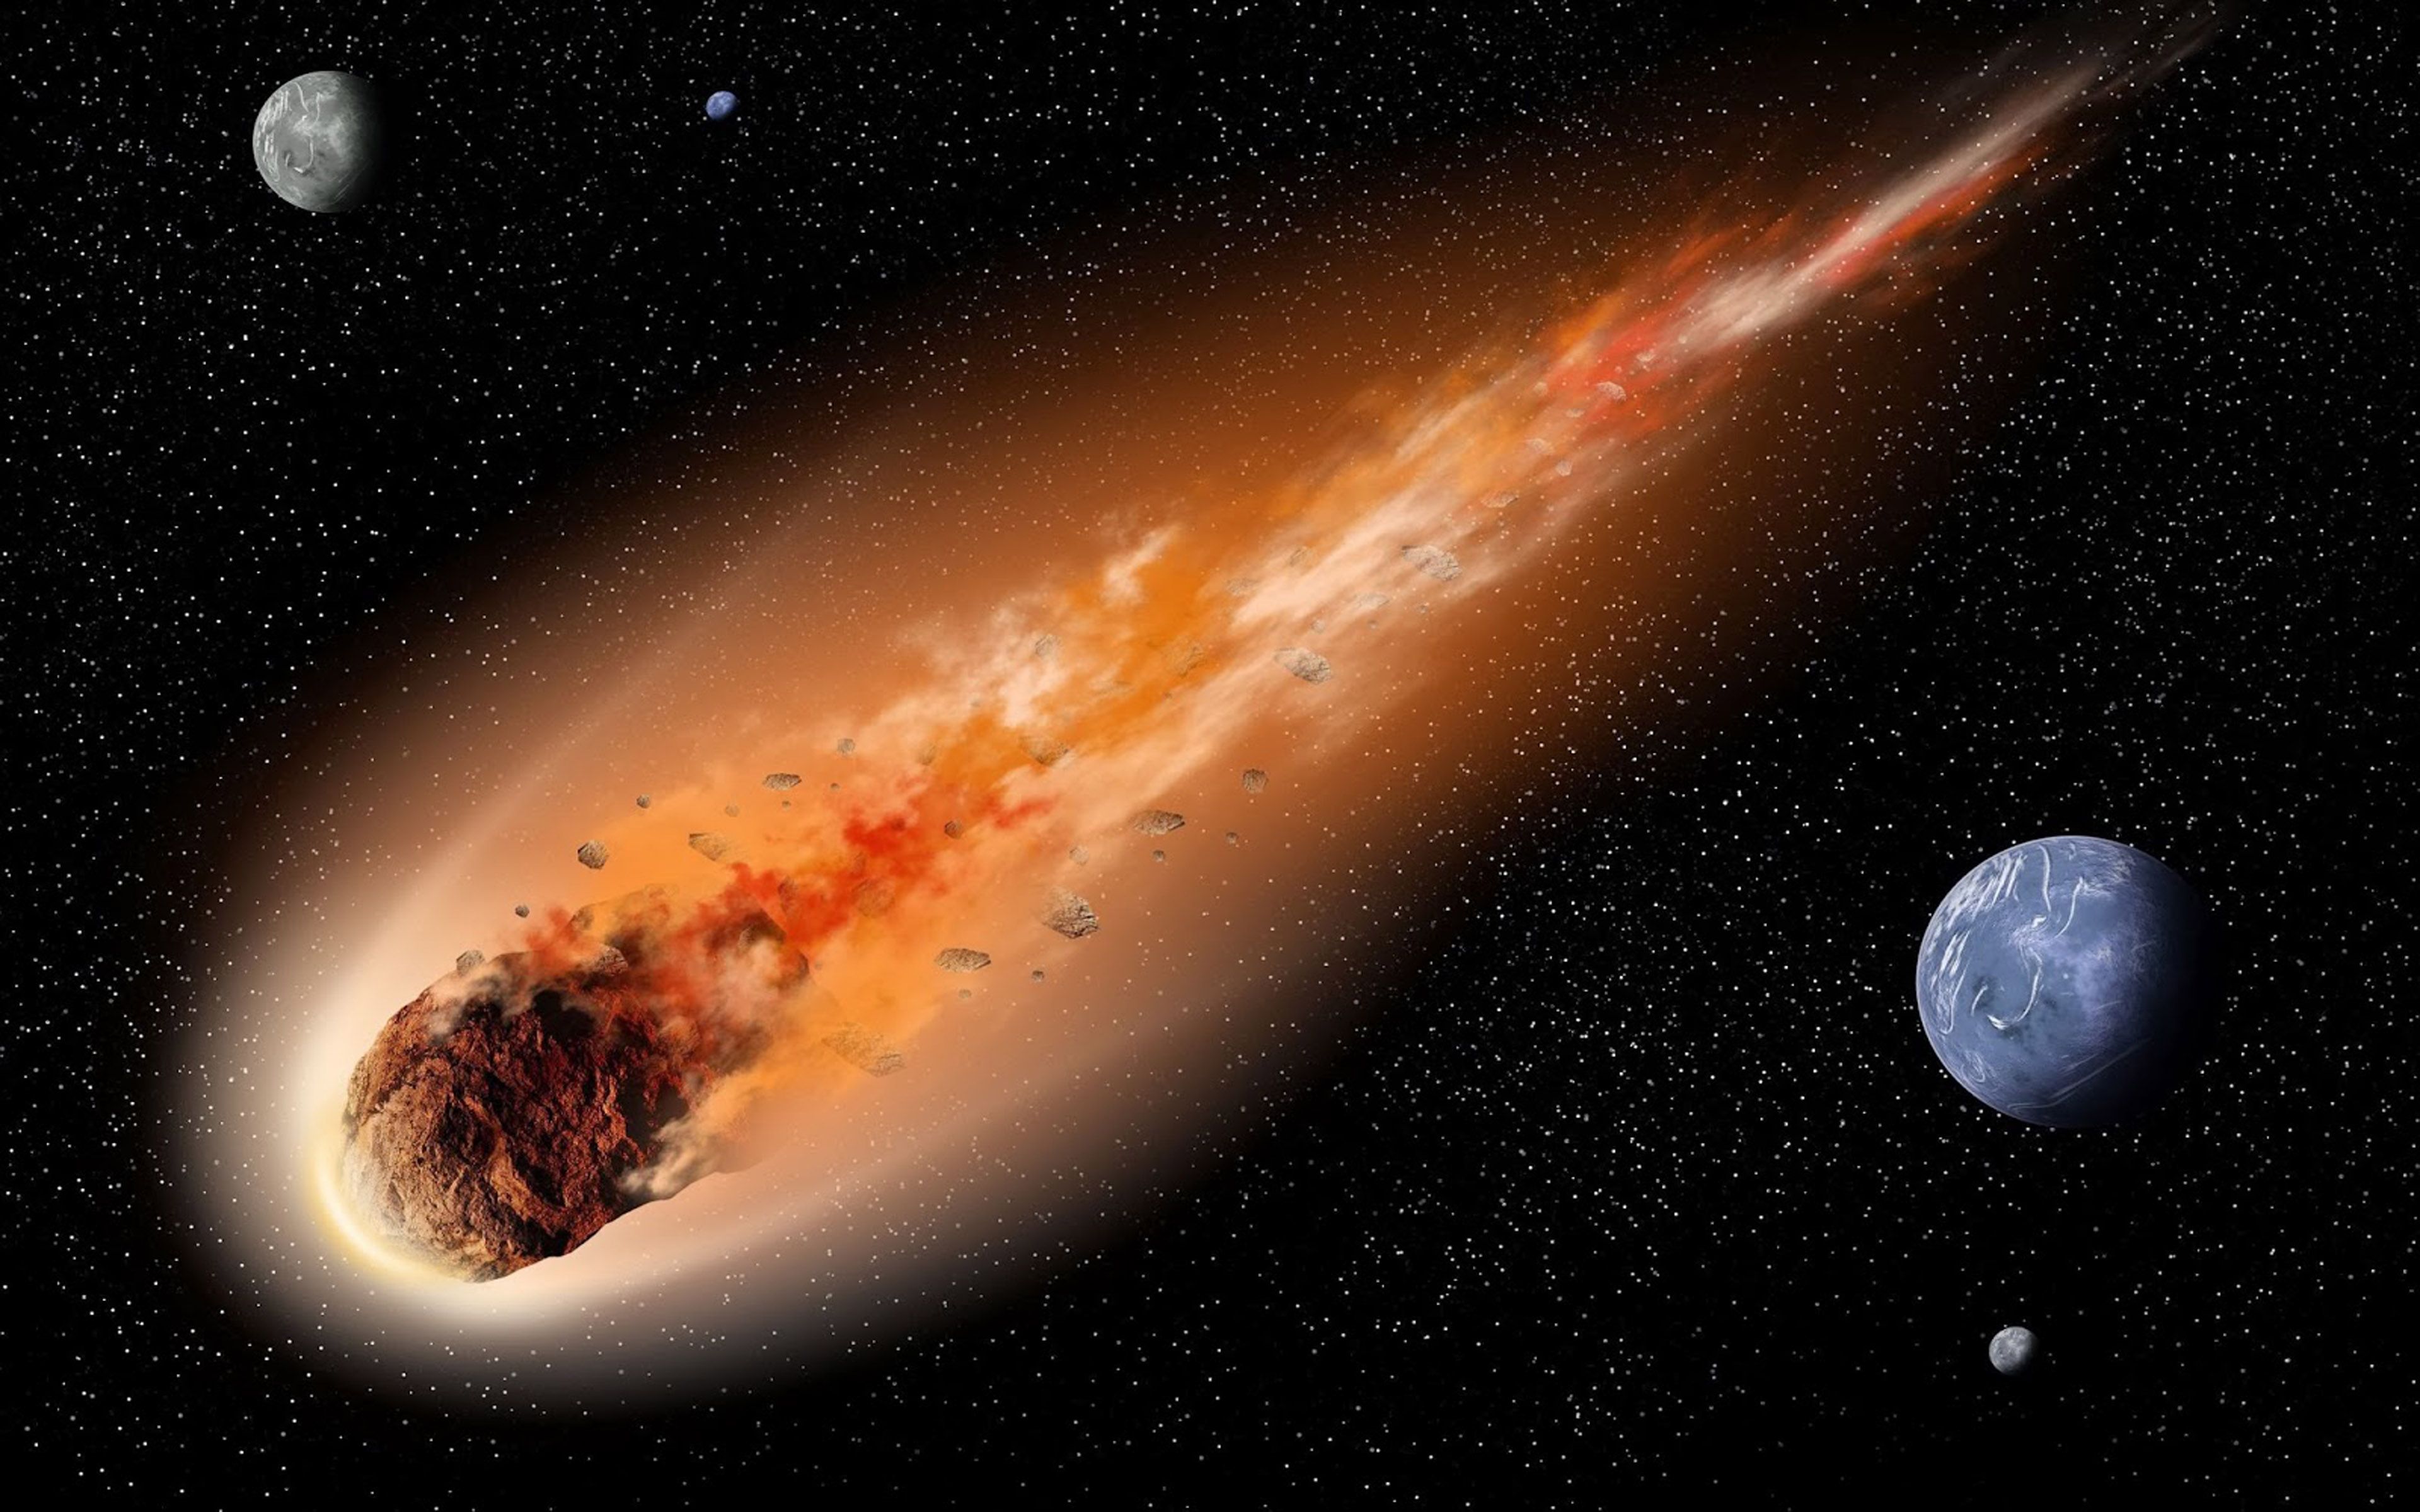 تصویر رویایی از شهاب سنگ درخشان در کمربند سیارکی